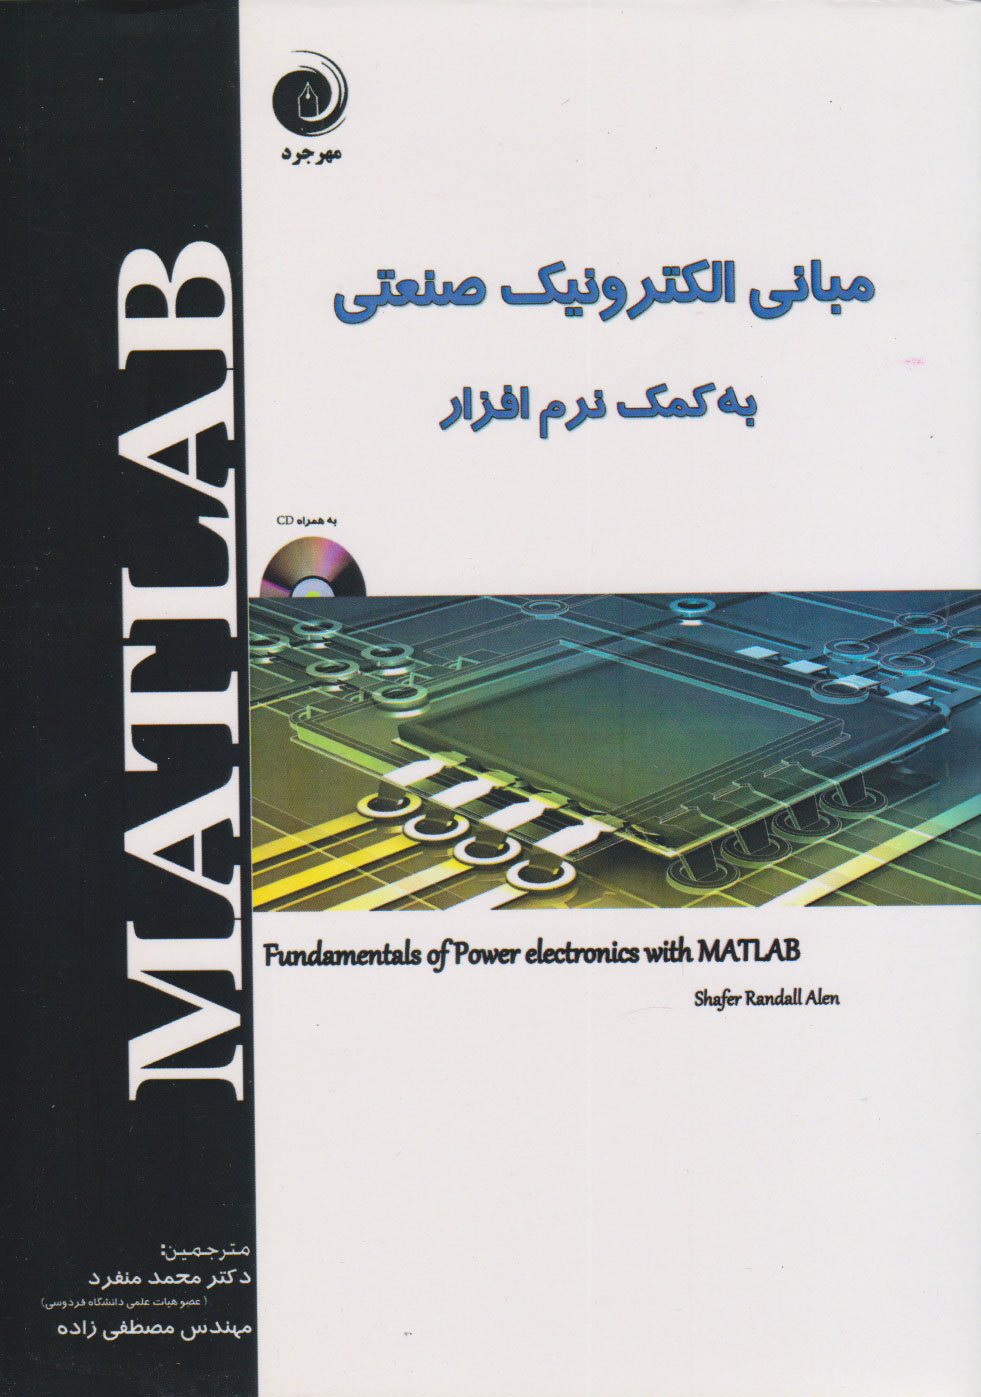  کتاب مبانی الکترونیک صنعتی به کمک نرم افزار MATLAB